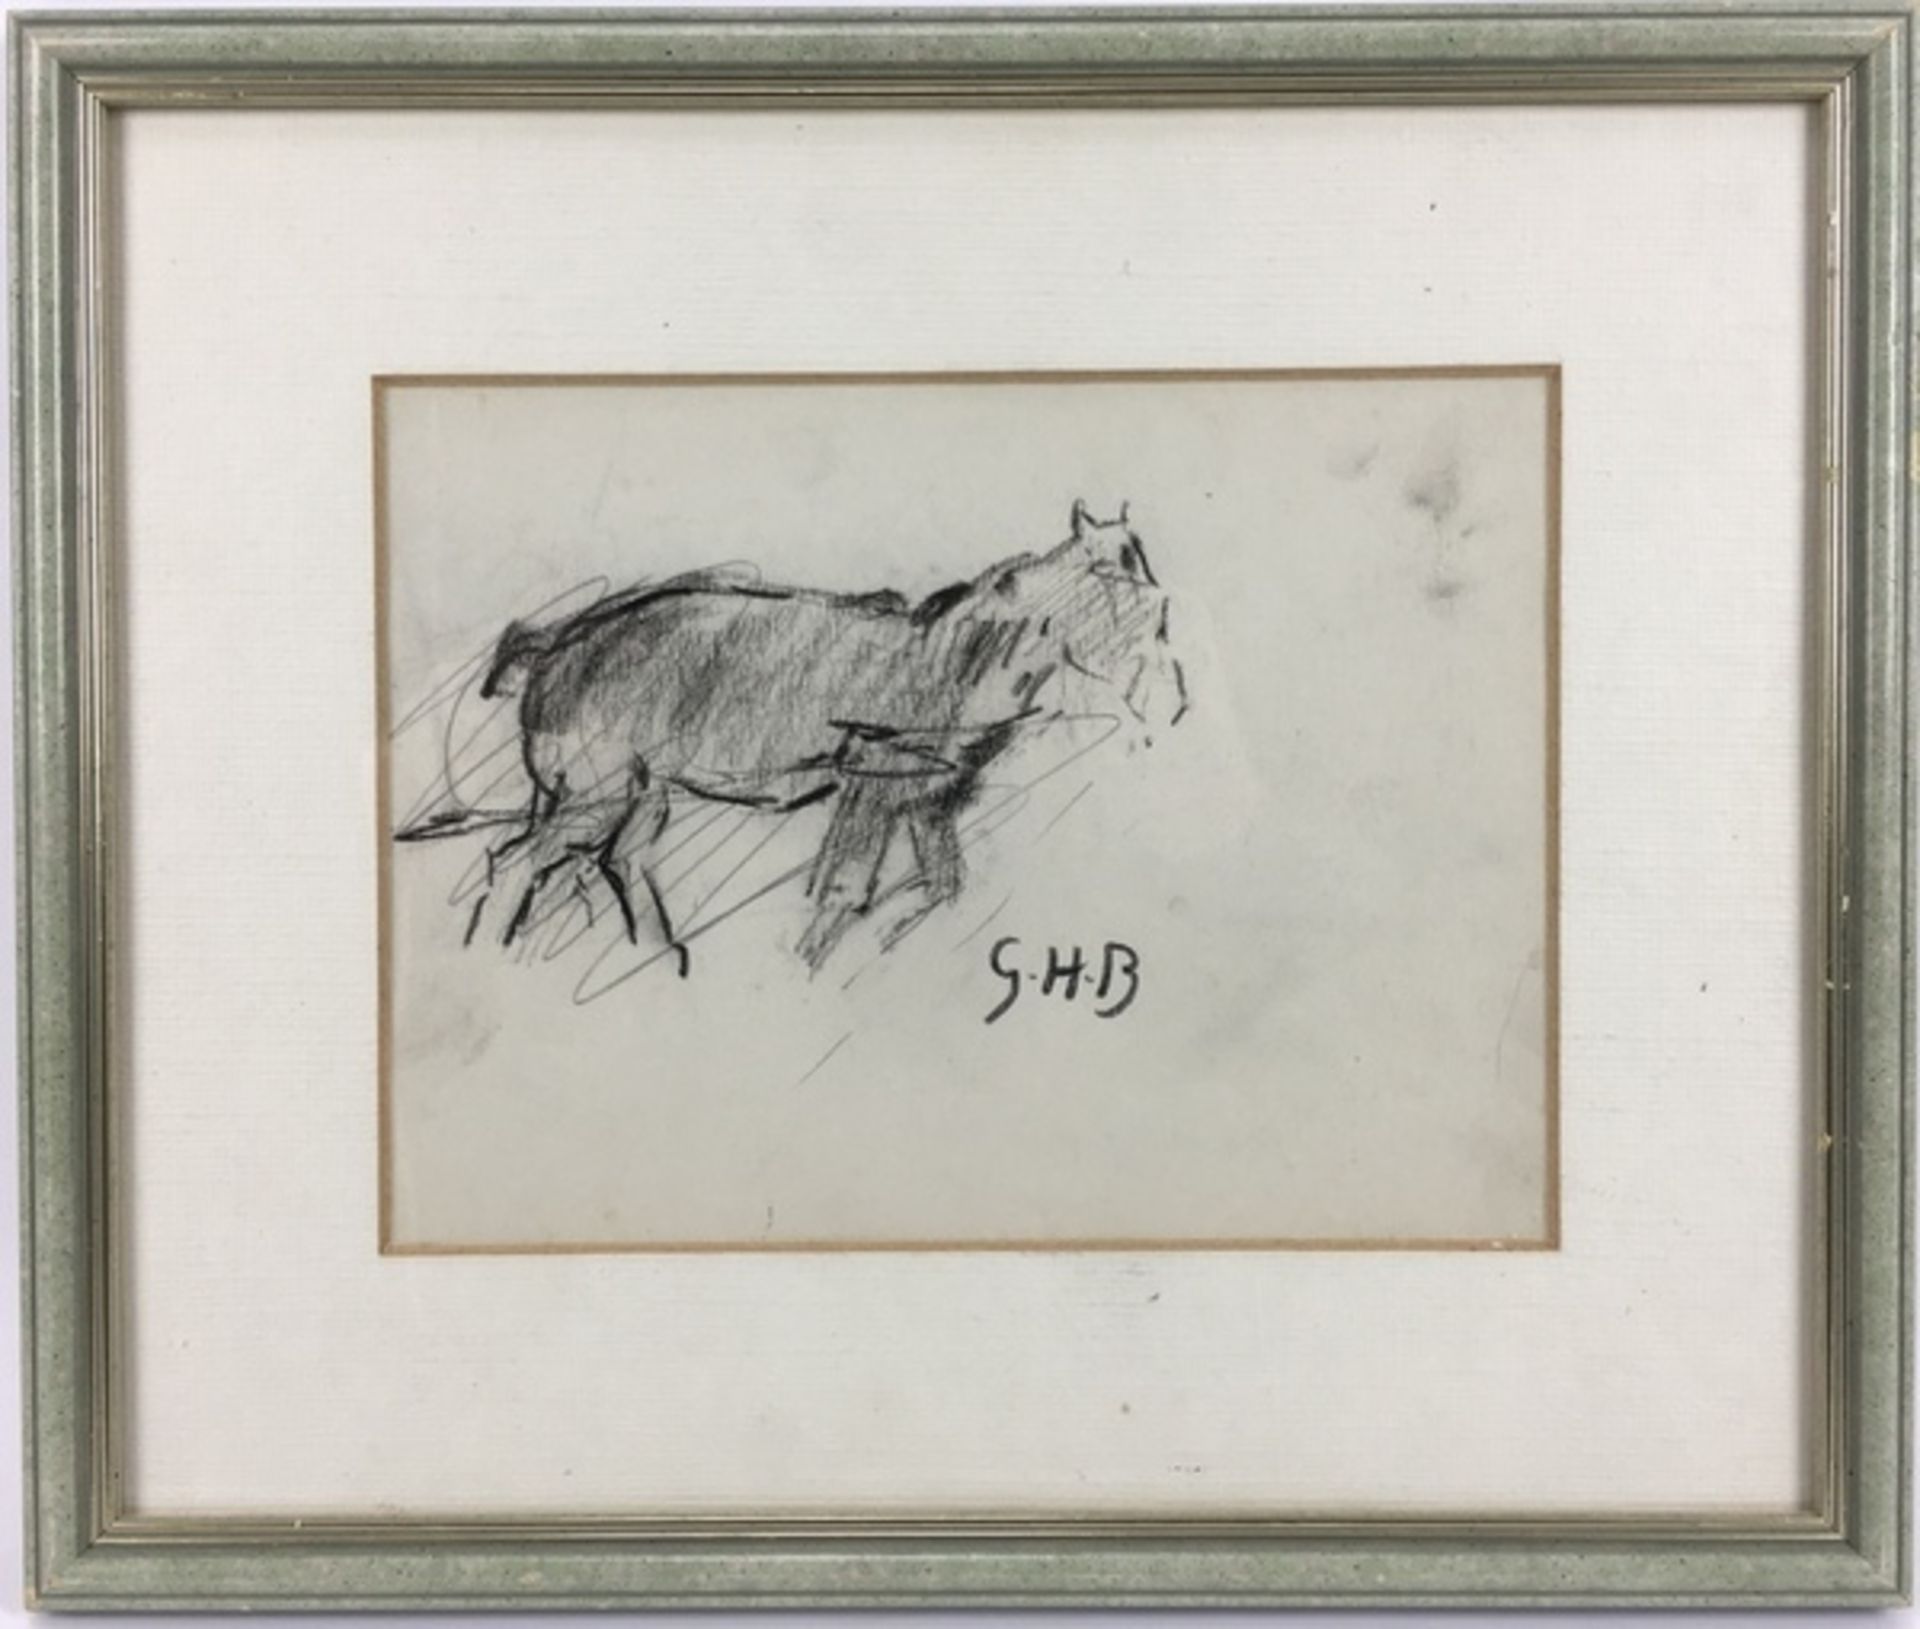 (Kunst) Tekening Tekening van een Belgisch trekpaard. Rechtsonder gesigneerd met initialen G.H.